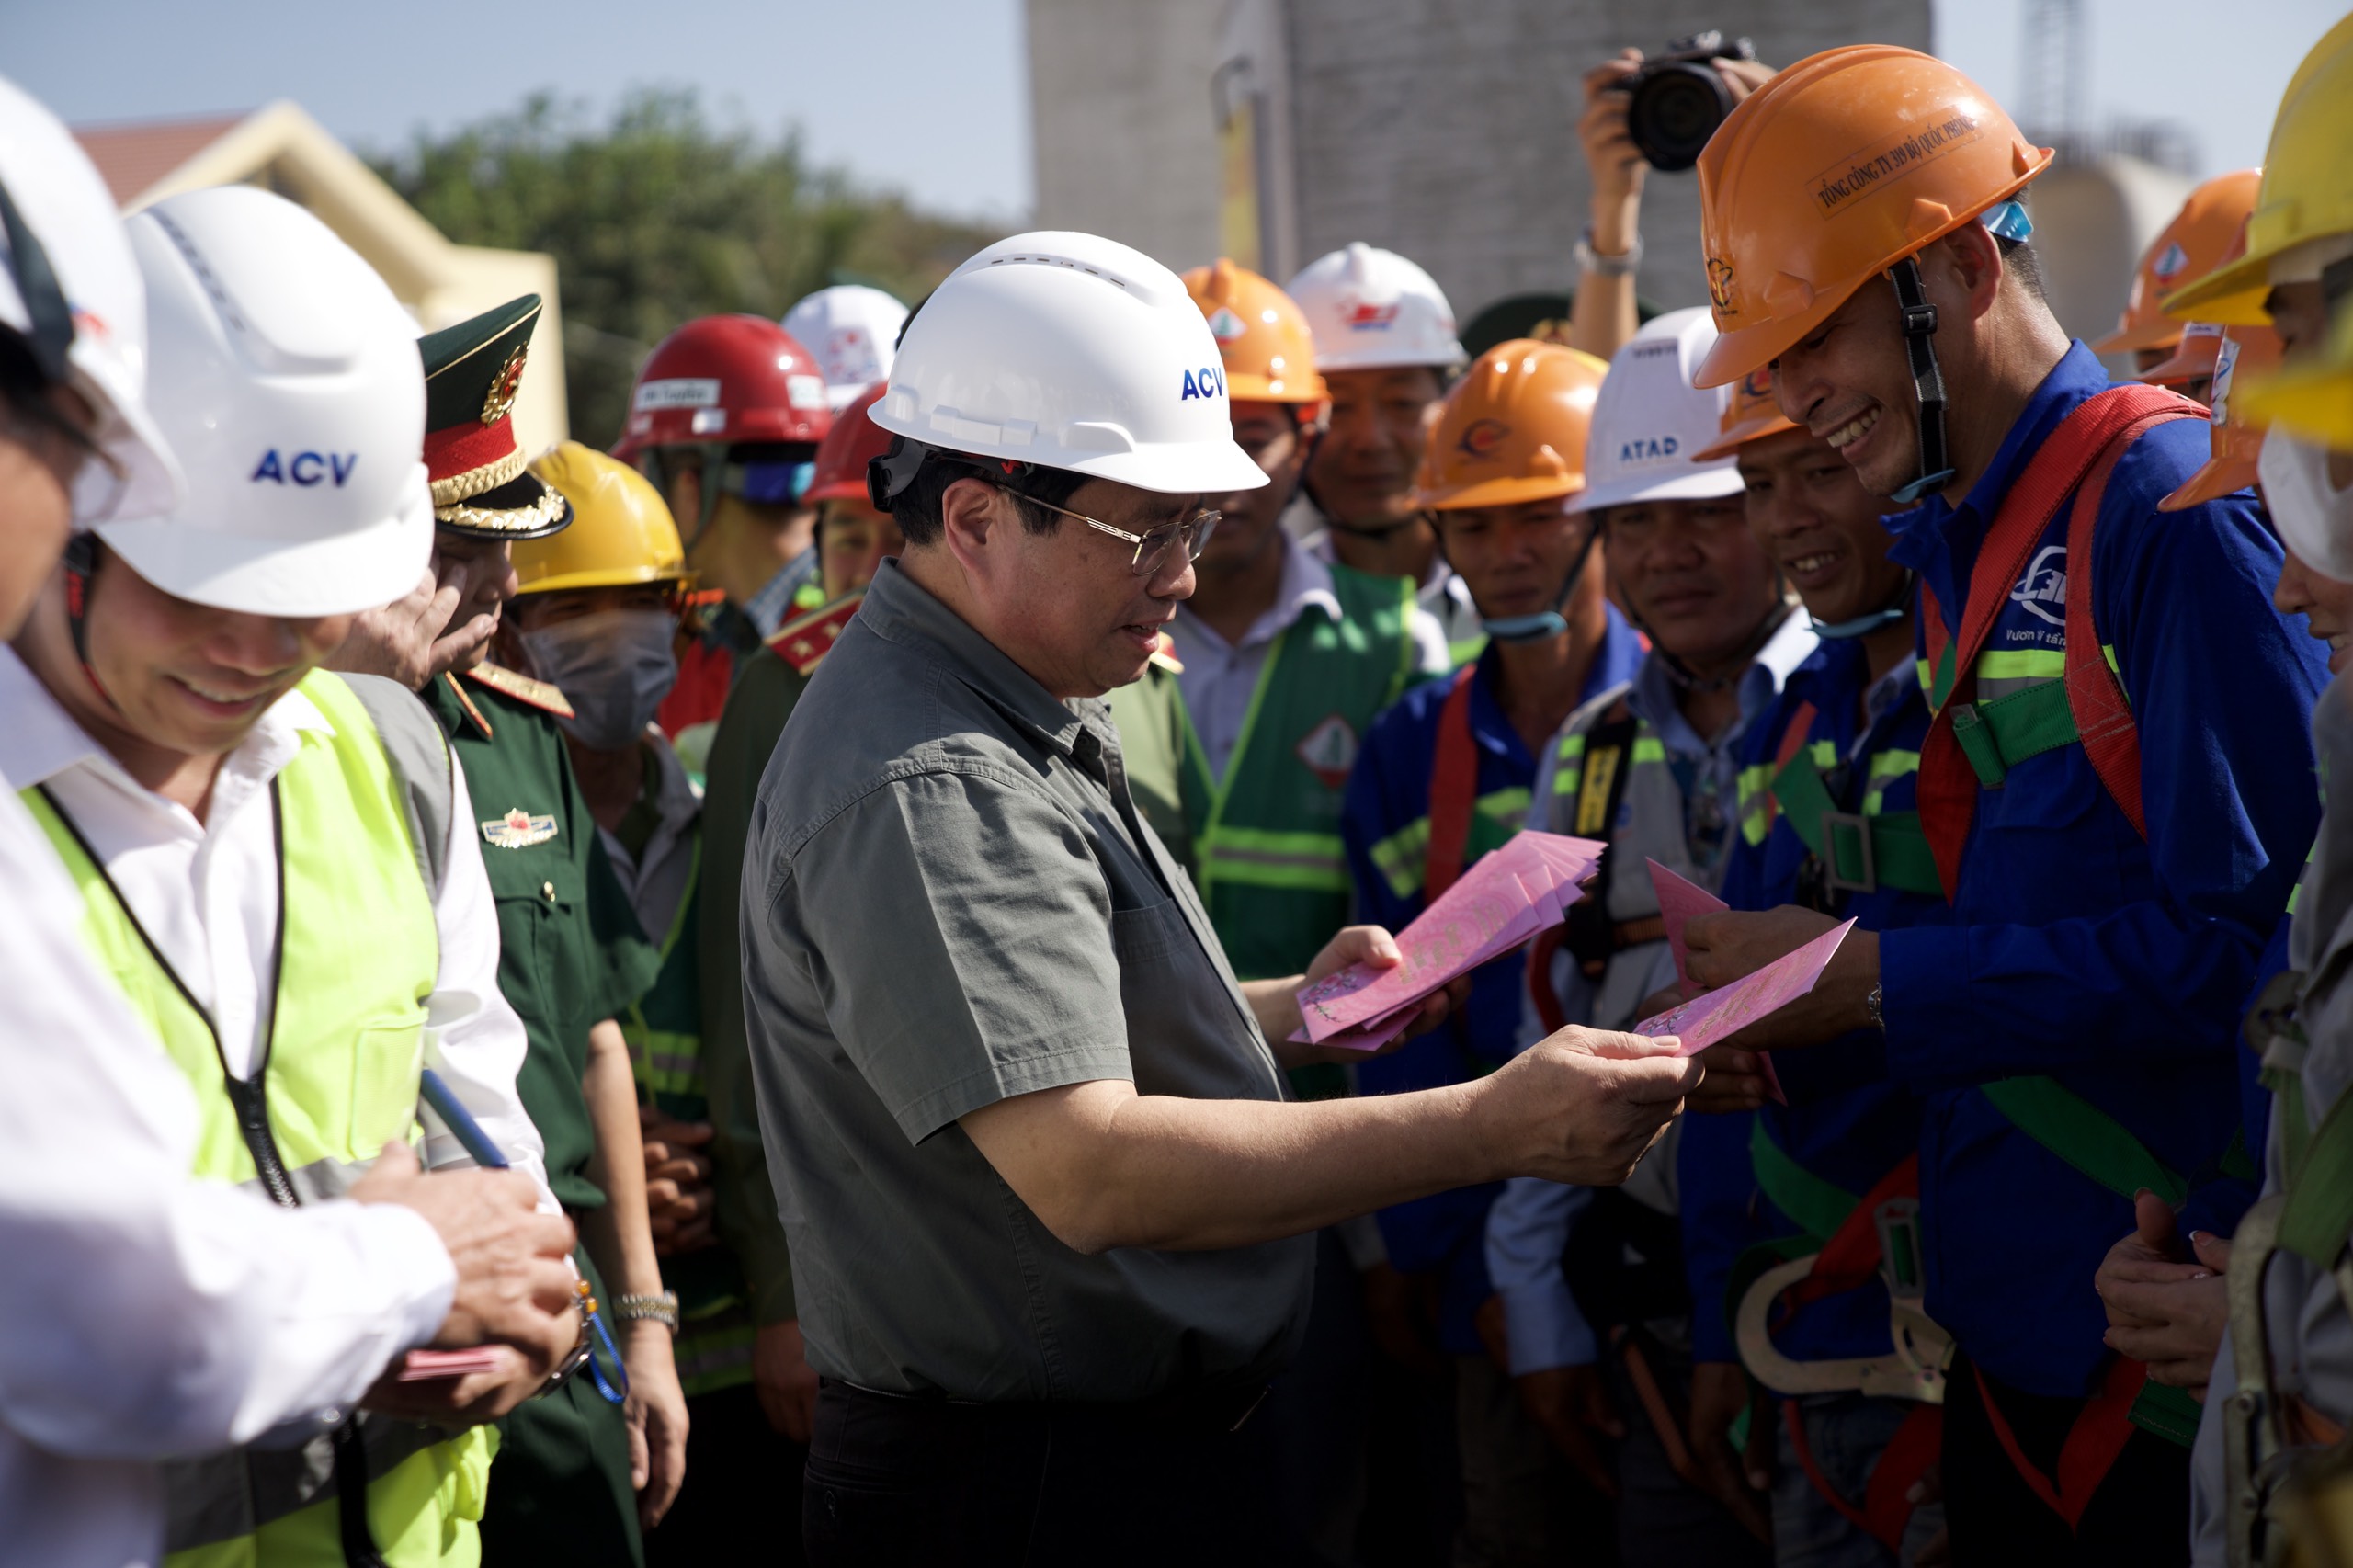 Thủ tướng: Nỗ lực hoàn thành nhà ga T3 sân bay Tân Sơn Nhất vào 30/4/2025- Ảnh 5.